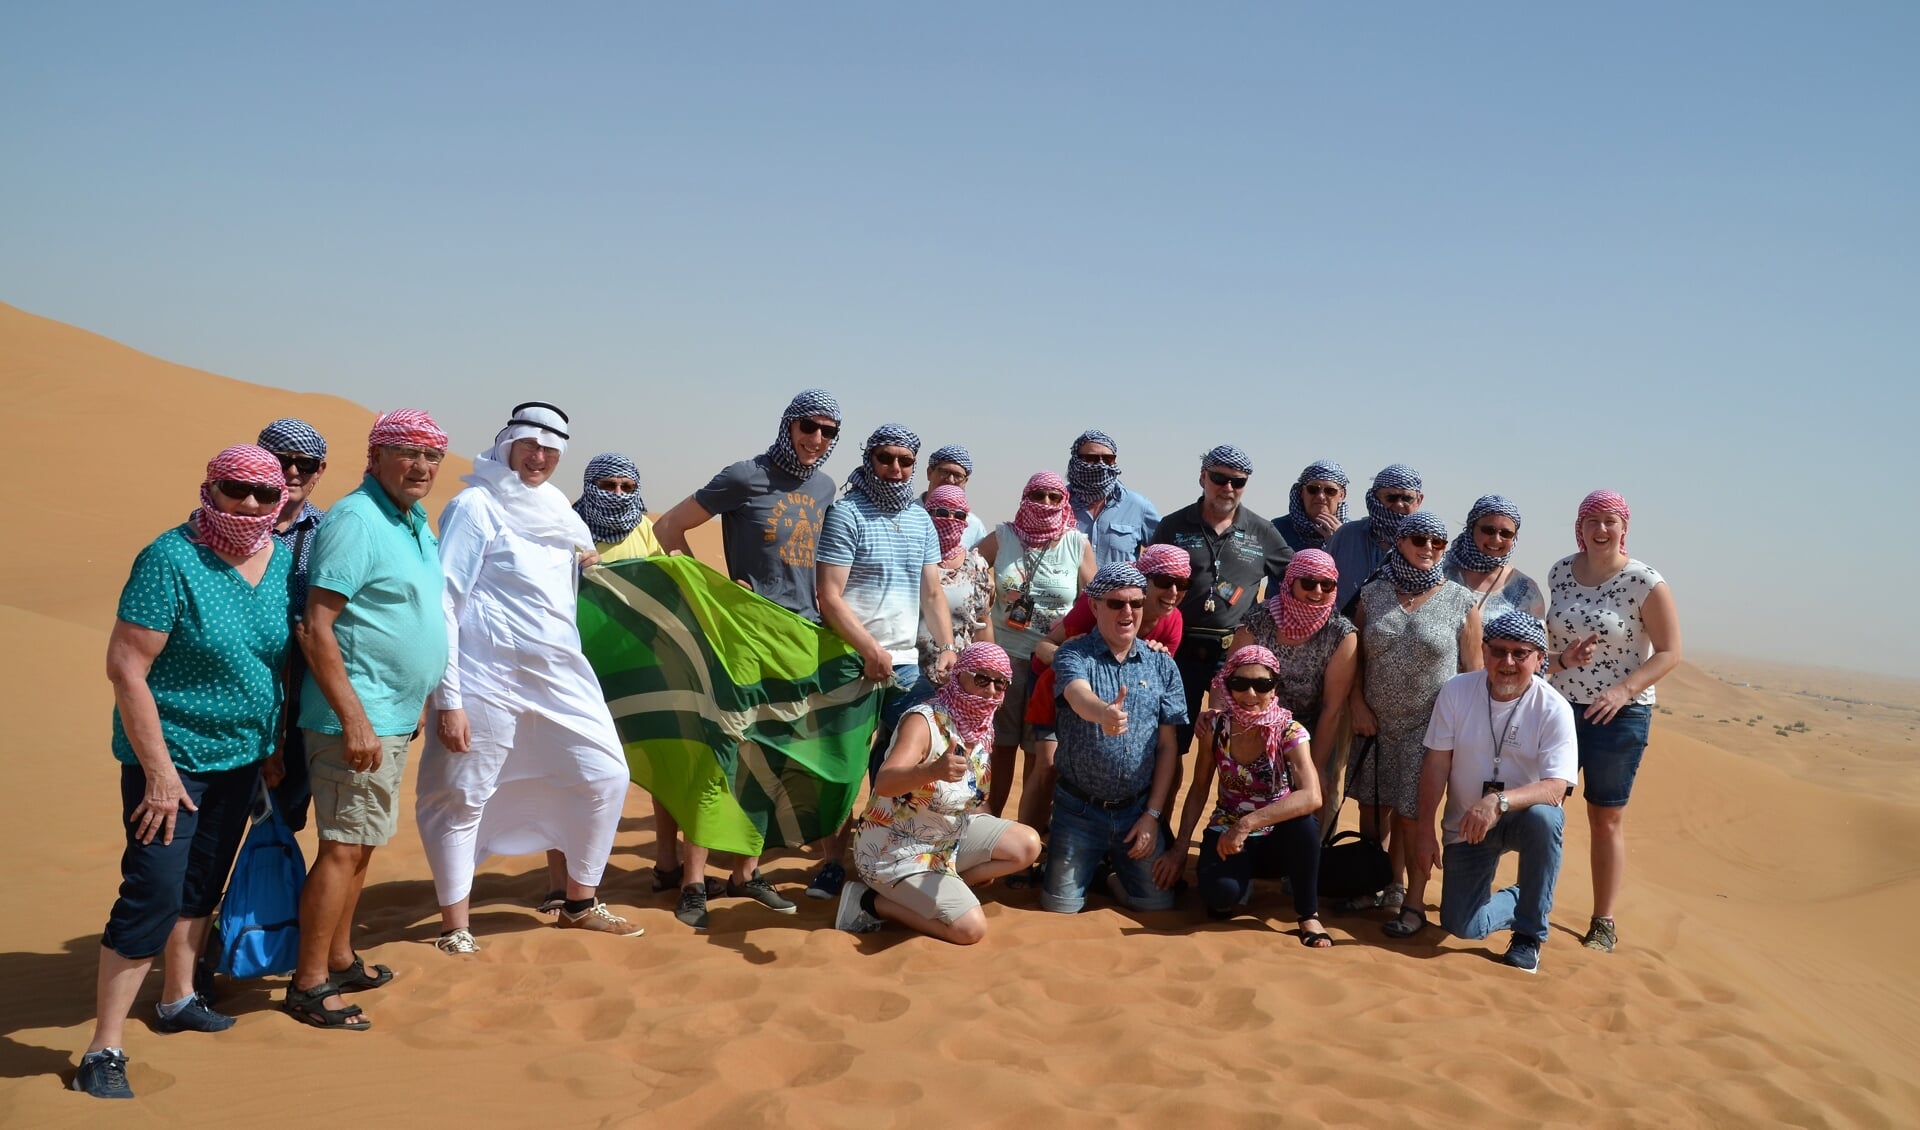 Folkloristische Dansgroep De Iesselschotsers uit Steenderen en omstreken tijdens een safari in de woestijn van het Verenigde Arabische Emiraat Sharjah. Foto: Johan Braakman